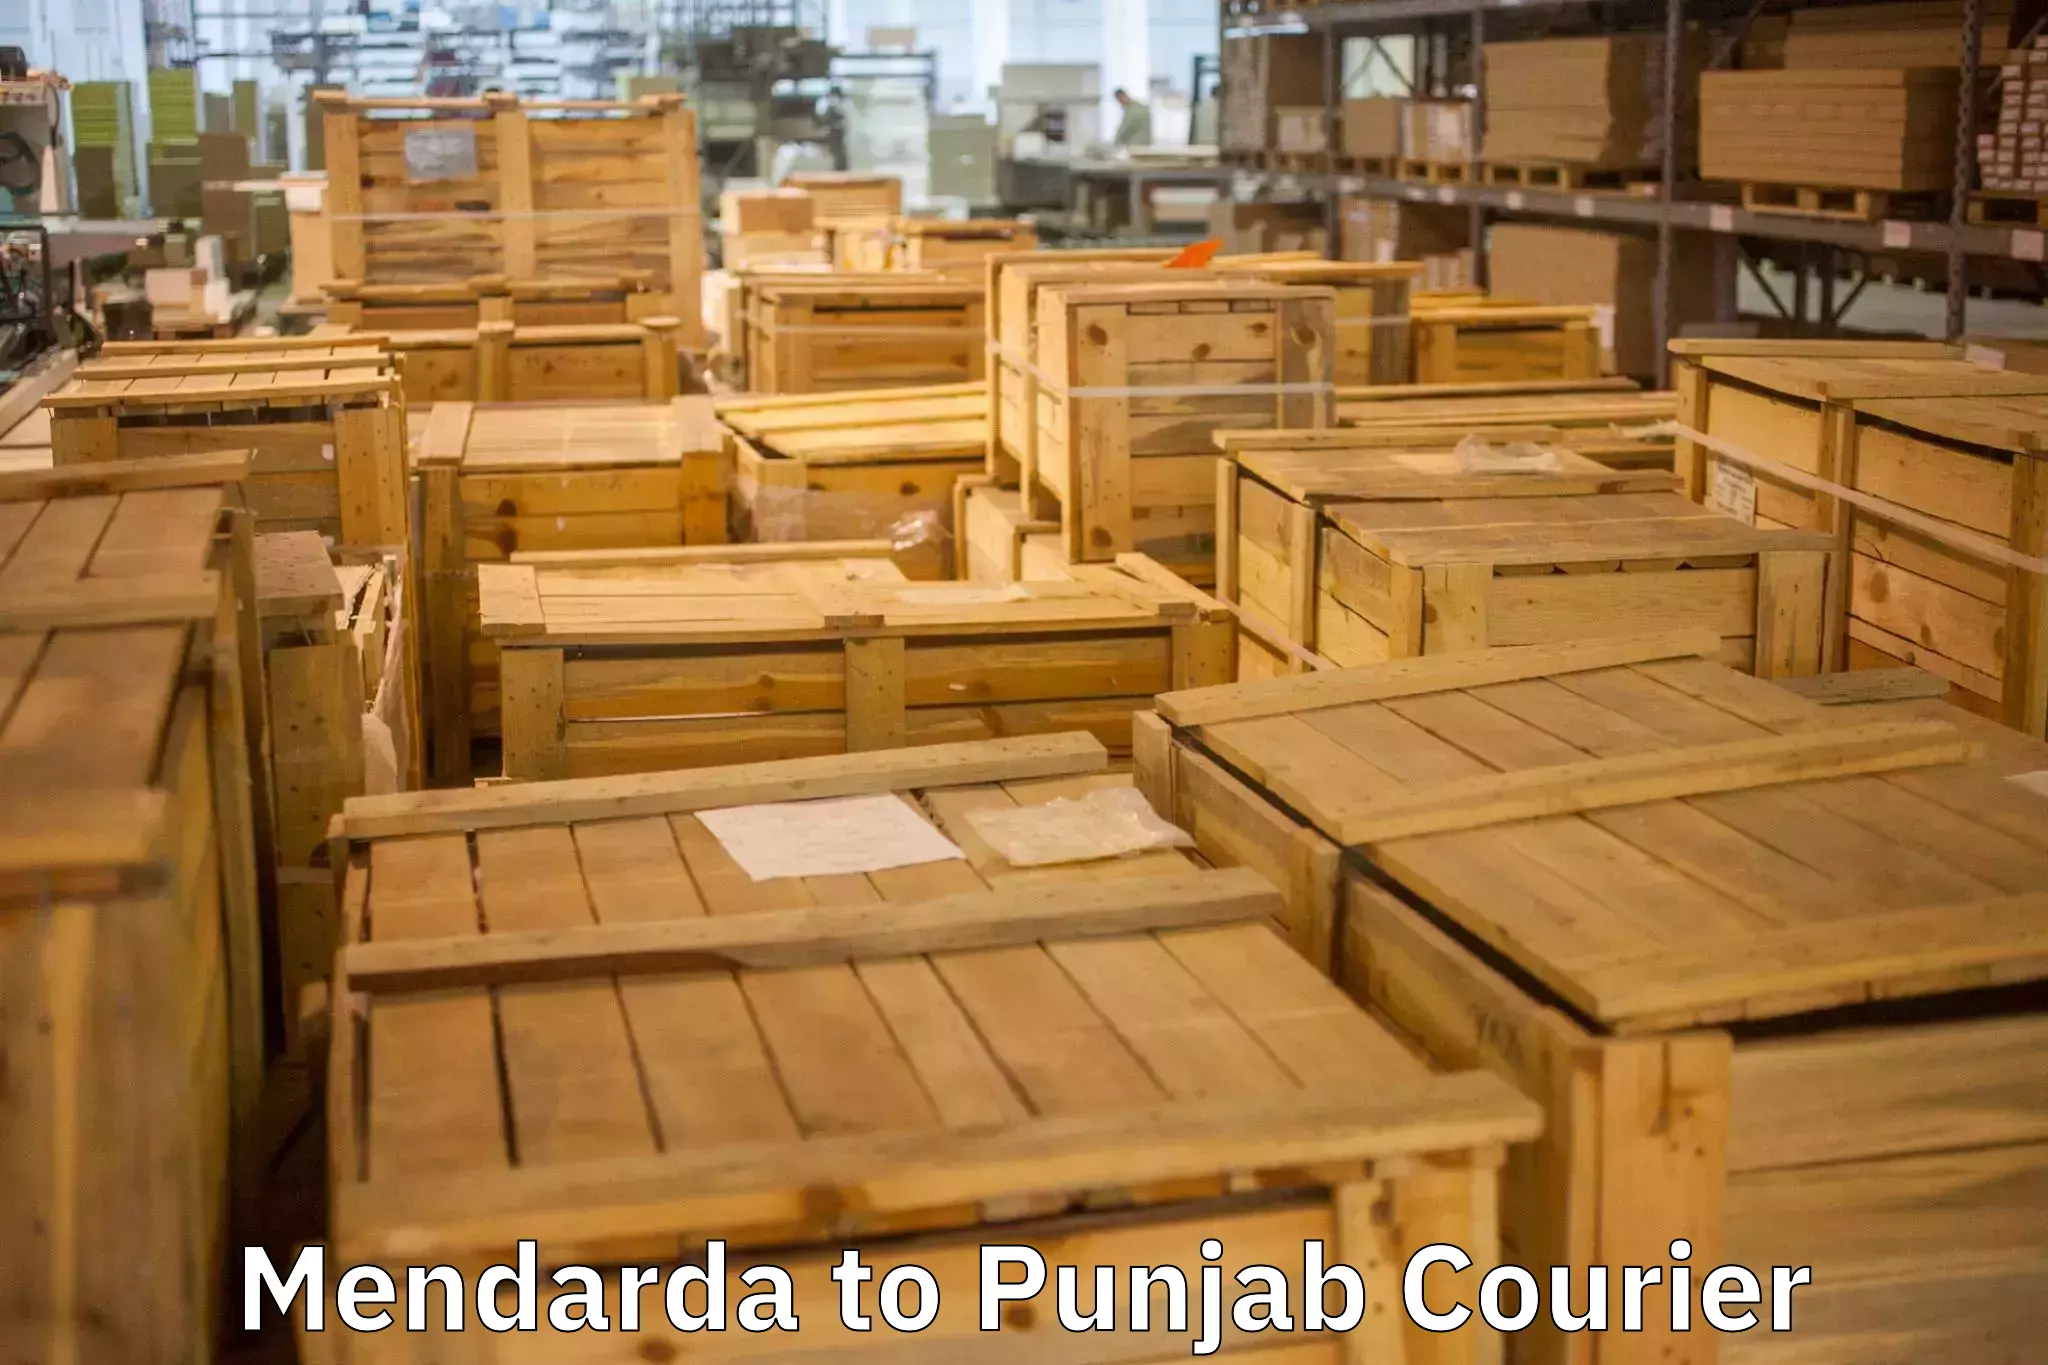 Trusted furniture transport Mendarda to Rupnagar